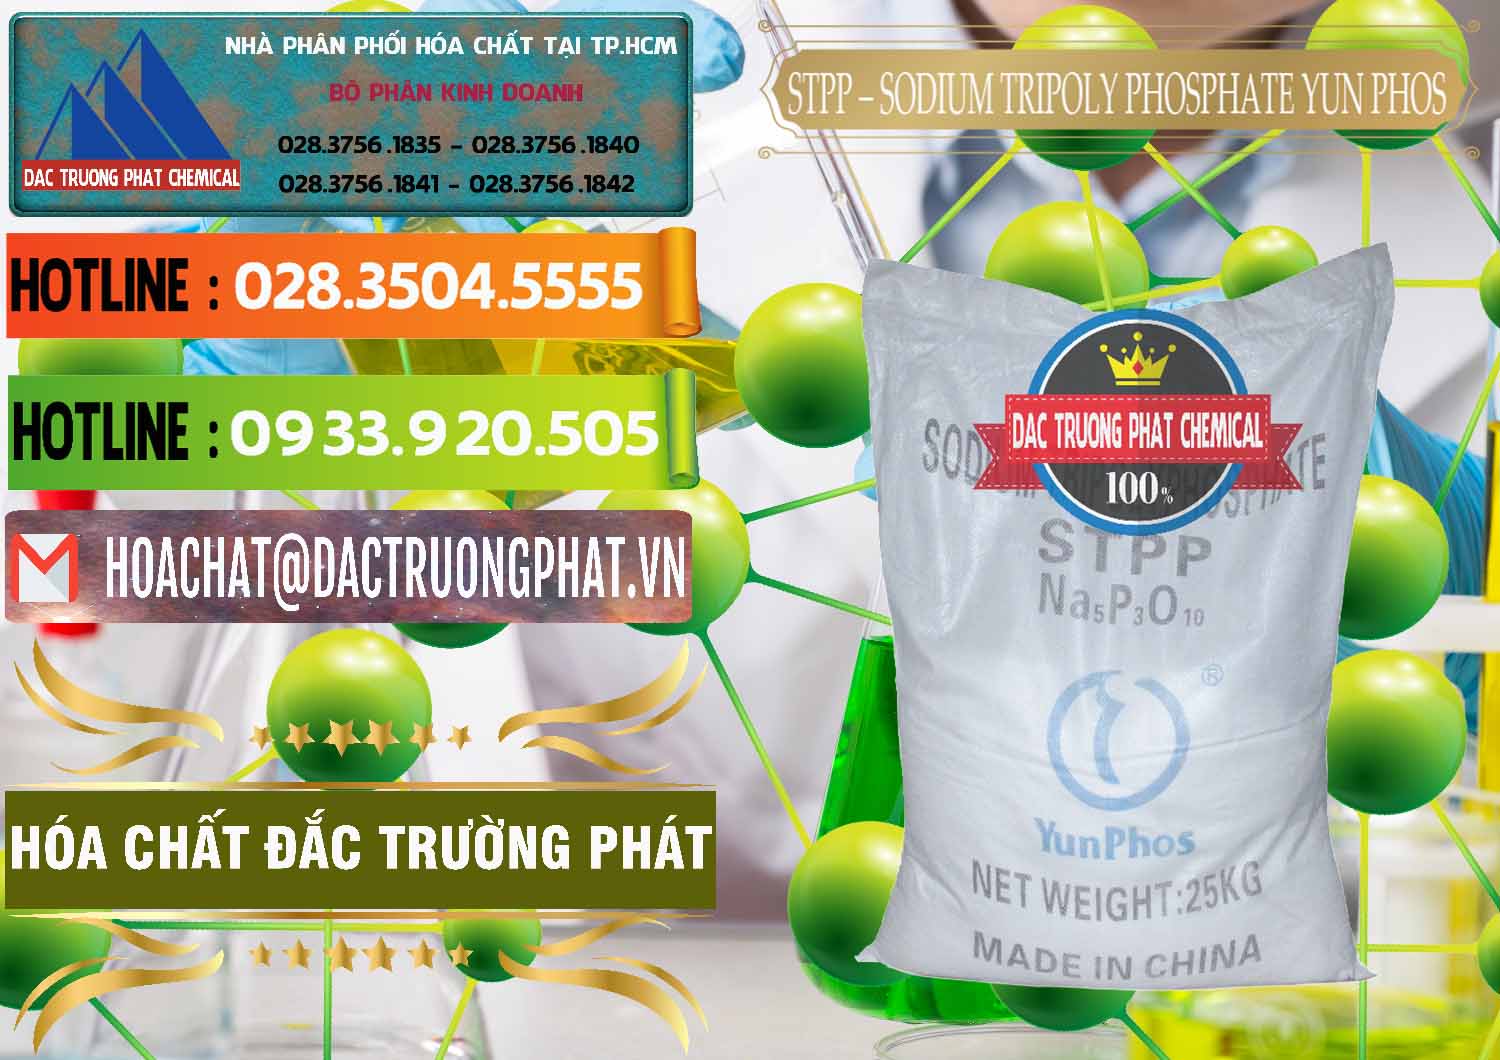 Nơi chuyên kinh doanh - bán Sodium Tripoly Phosphate - STPP Yun Phos Trung Quốc China - 0153 - Phân phối và bán hóa chất tại TP.HCM - cungcaphoachat.com.vn